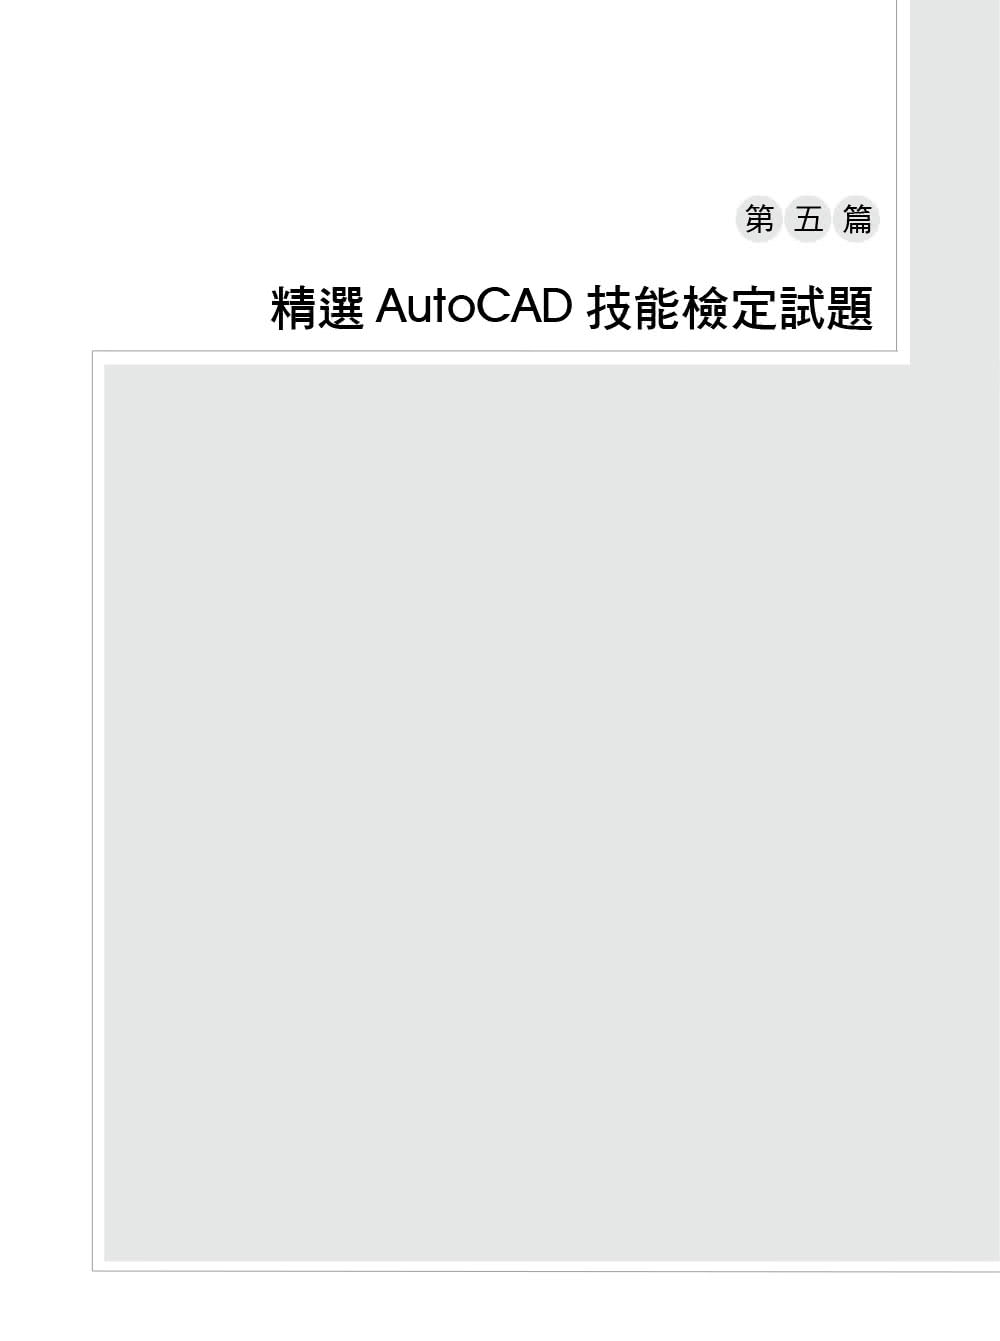 TQC＋ AutoCAD 2021特訓教材－3D應用篇（隨書附贈20個精彩3D動態教學檔）